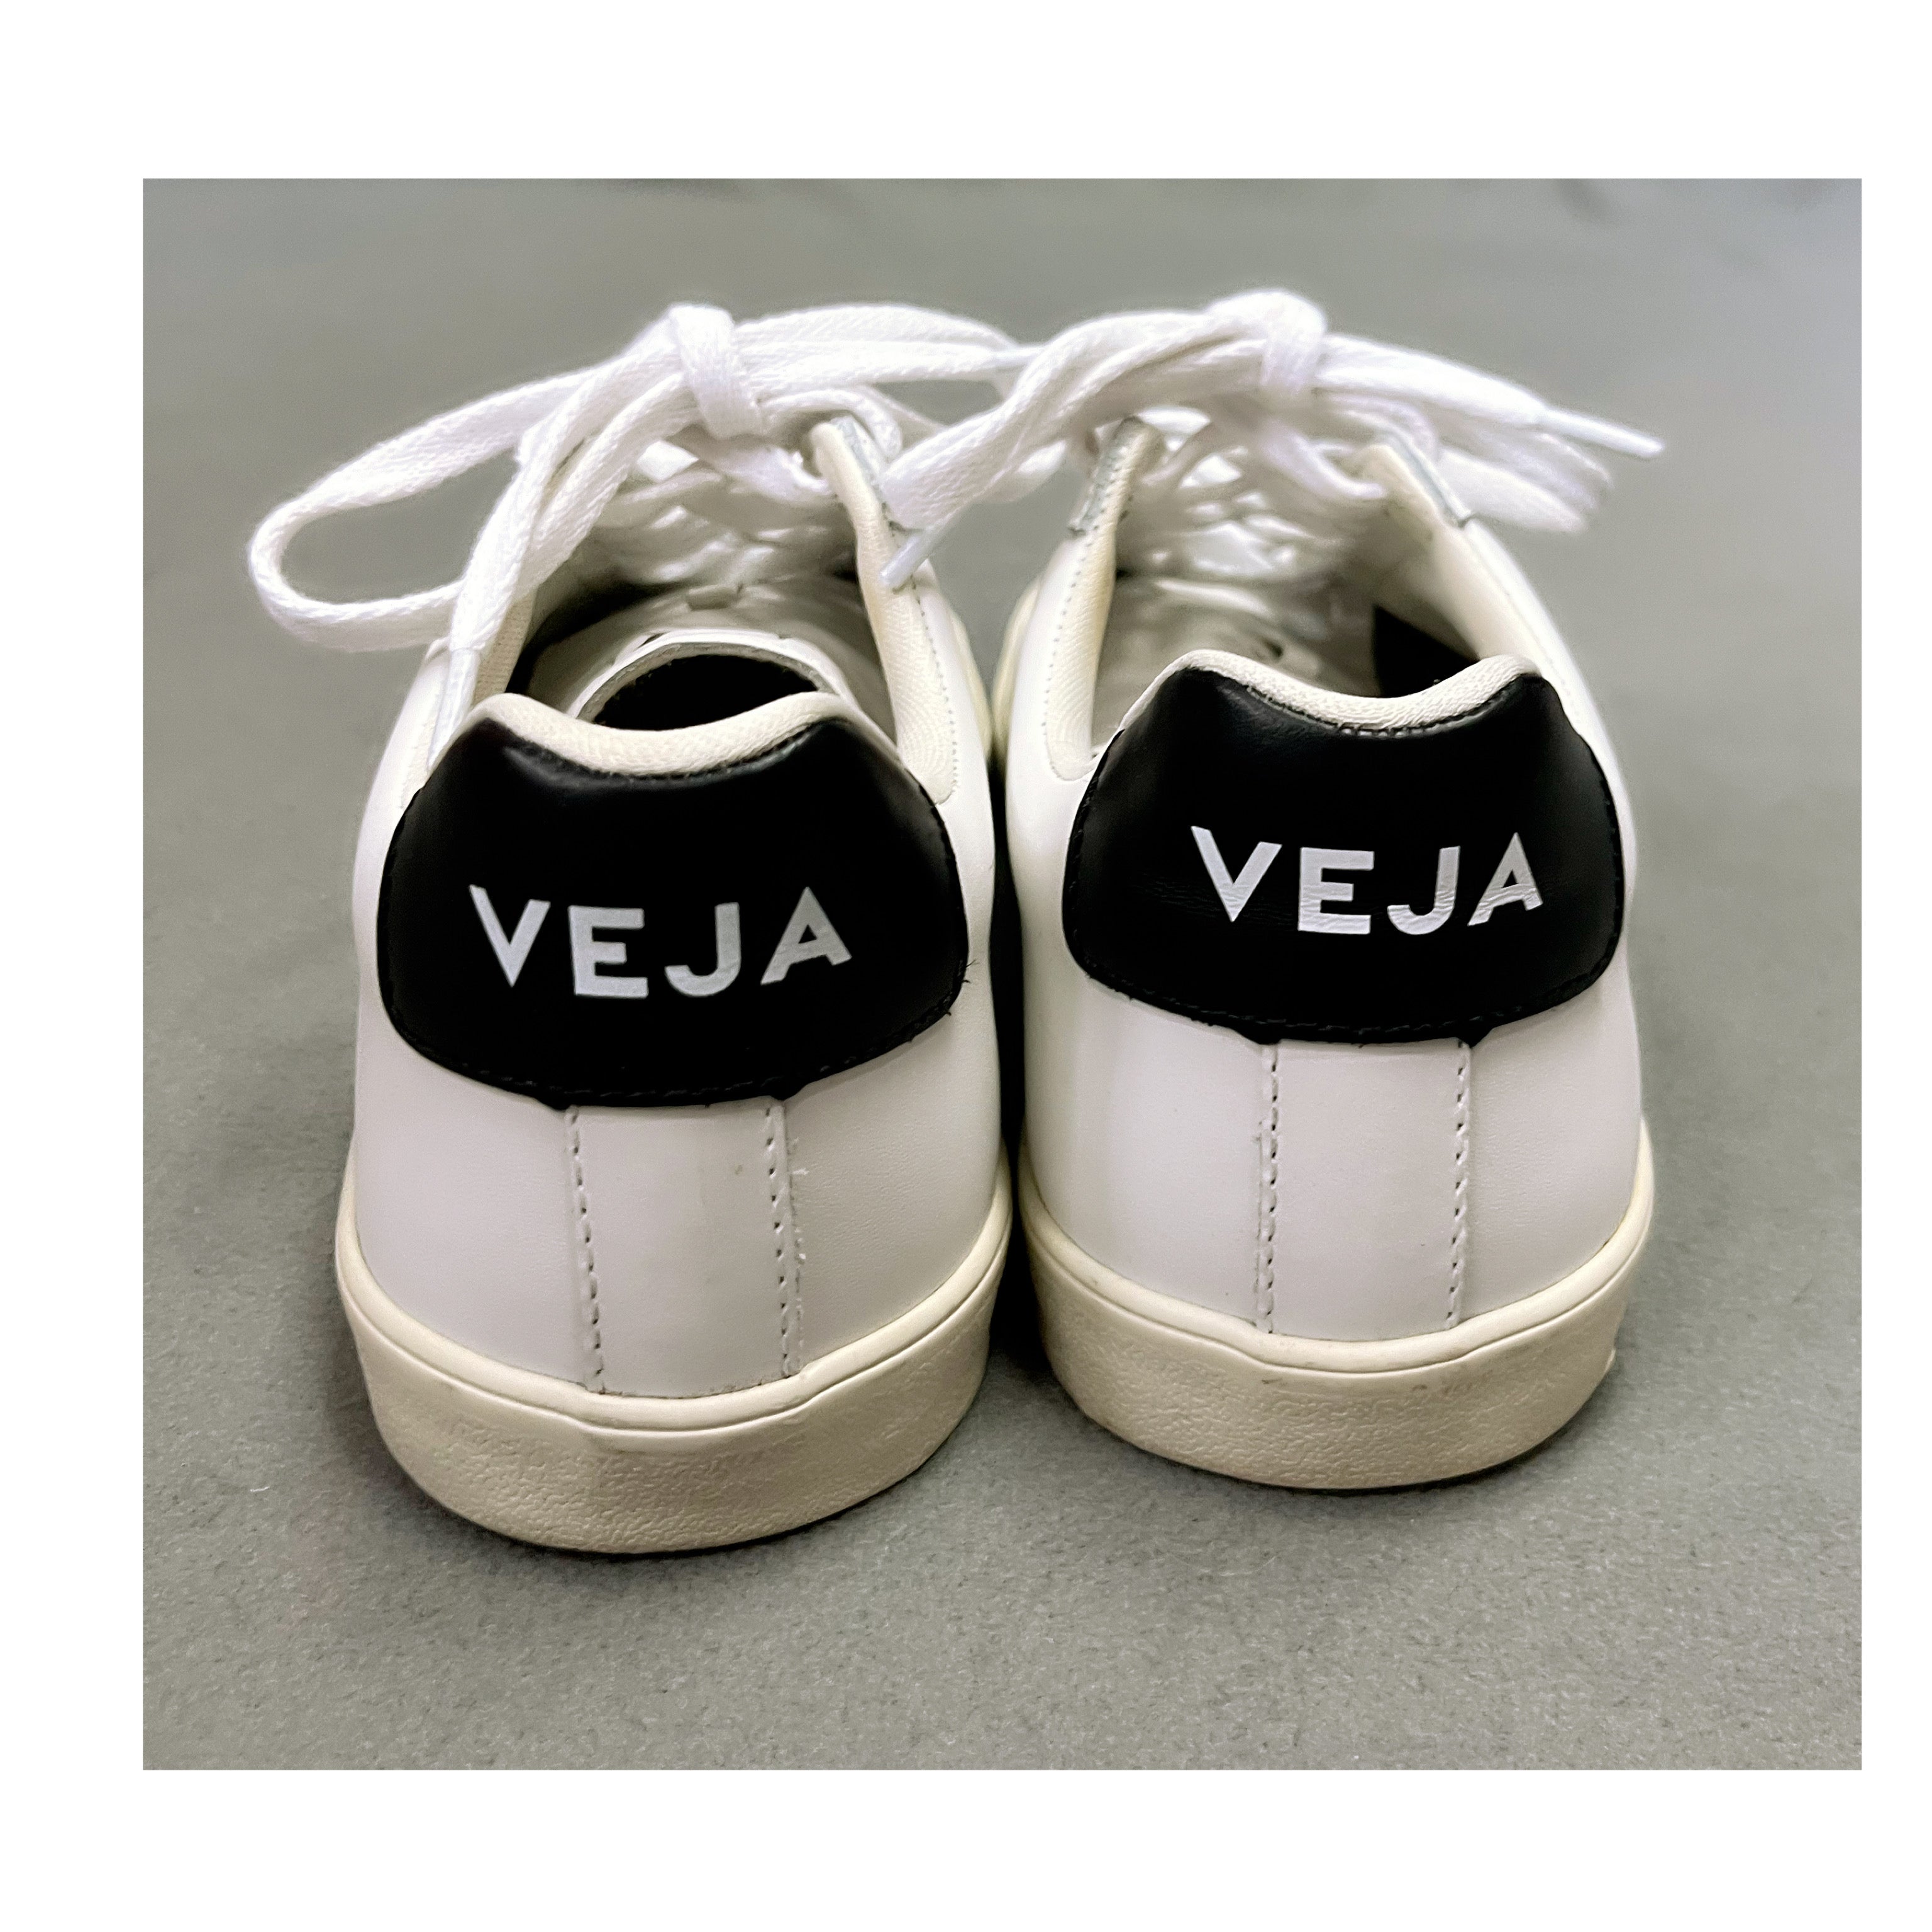 Veja white & black Esplar low sneakers, size 8